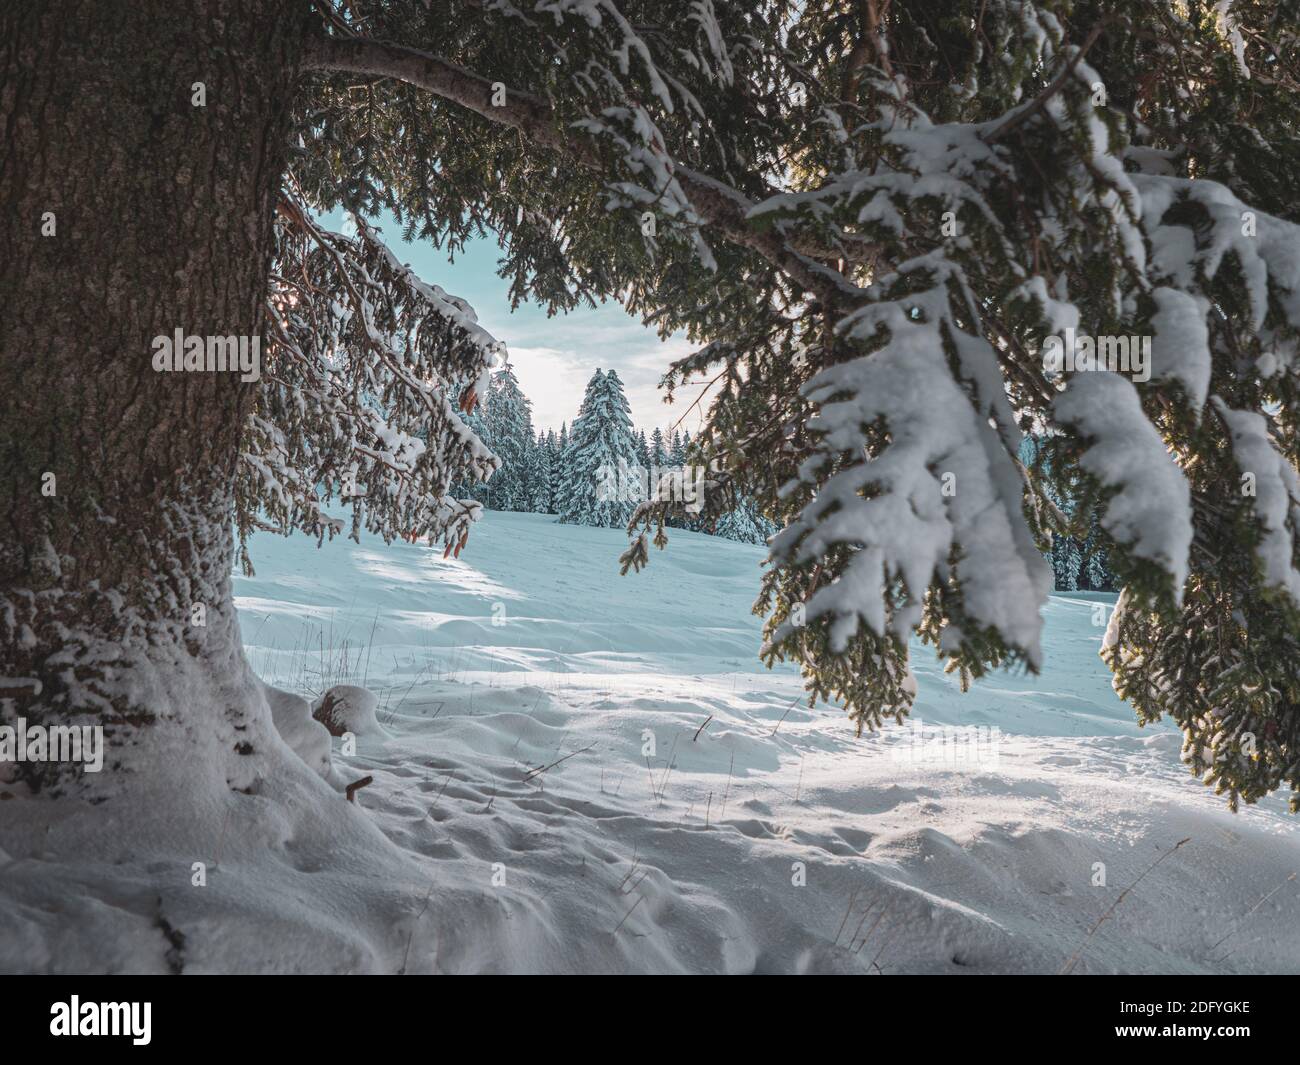 Cerca de una rama de pinos cargada de nieve contra un impresionante paisaje invernal de campos cubiertos de nieve y pinos. Foto de stock